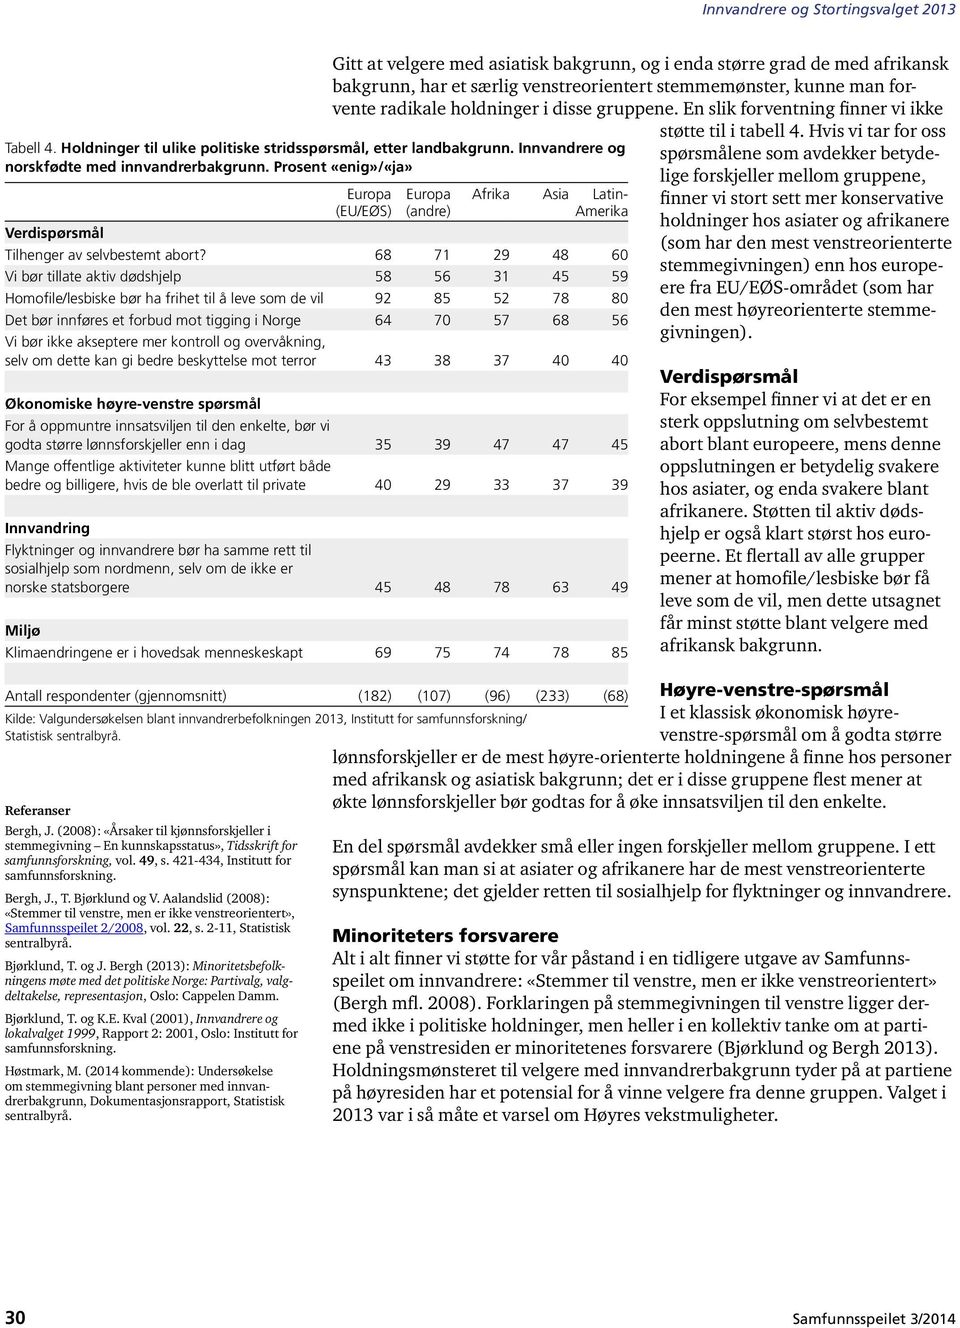 Aalandslid (2008): «Stemmer til venstre, men er ikke venstreorientert», Samfunnsspeilet 2/2008, vol. 22, s. 2-11, Statistisk sentralbyrå. Bjørklund, T. og J.